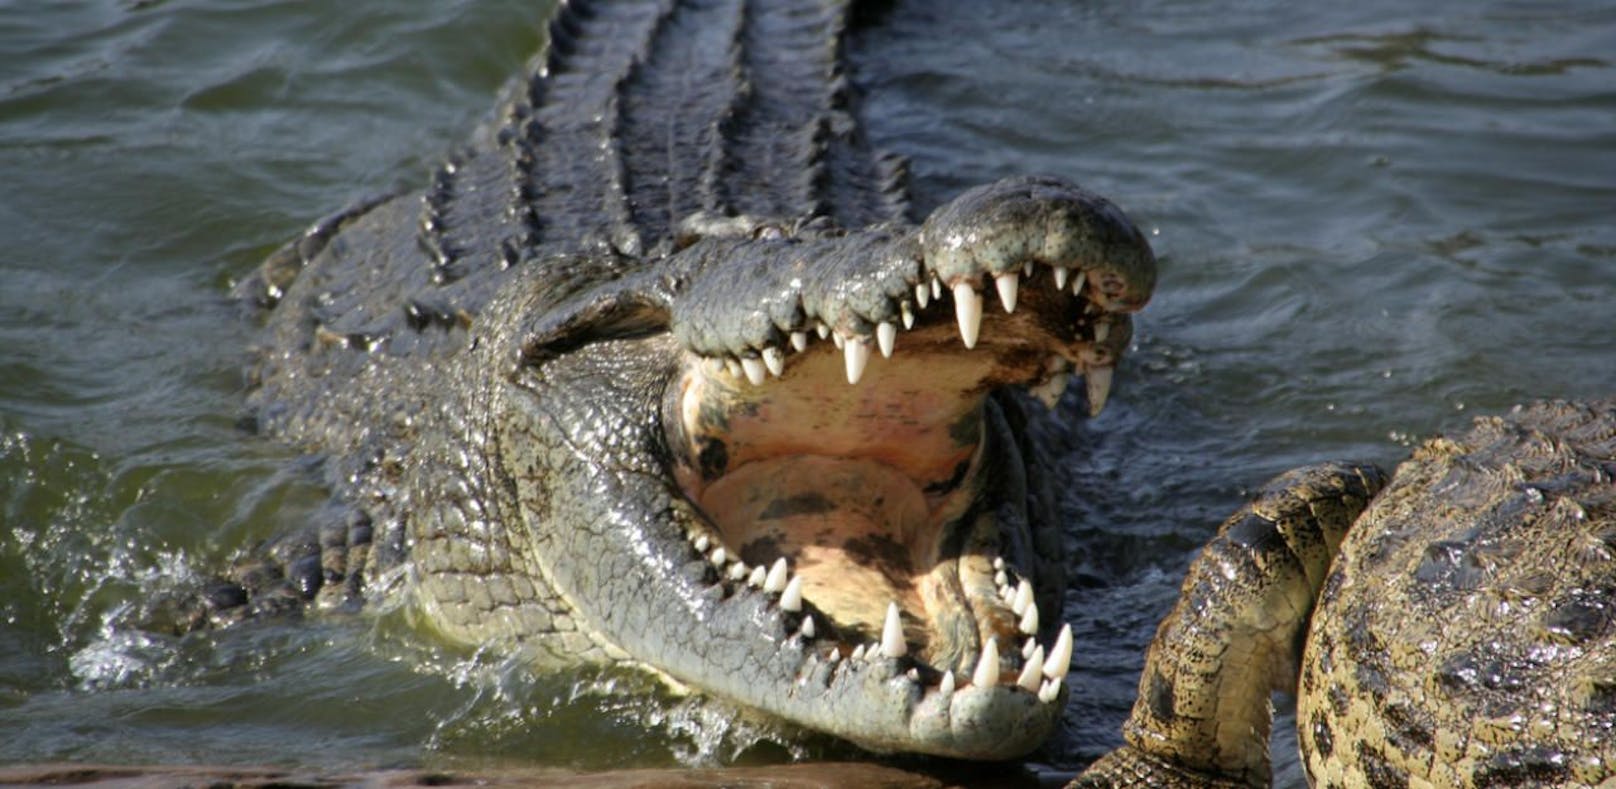 Der Bub wurde von einem Krokodil angegriffen und getötet